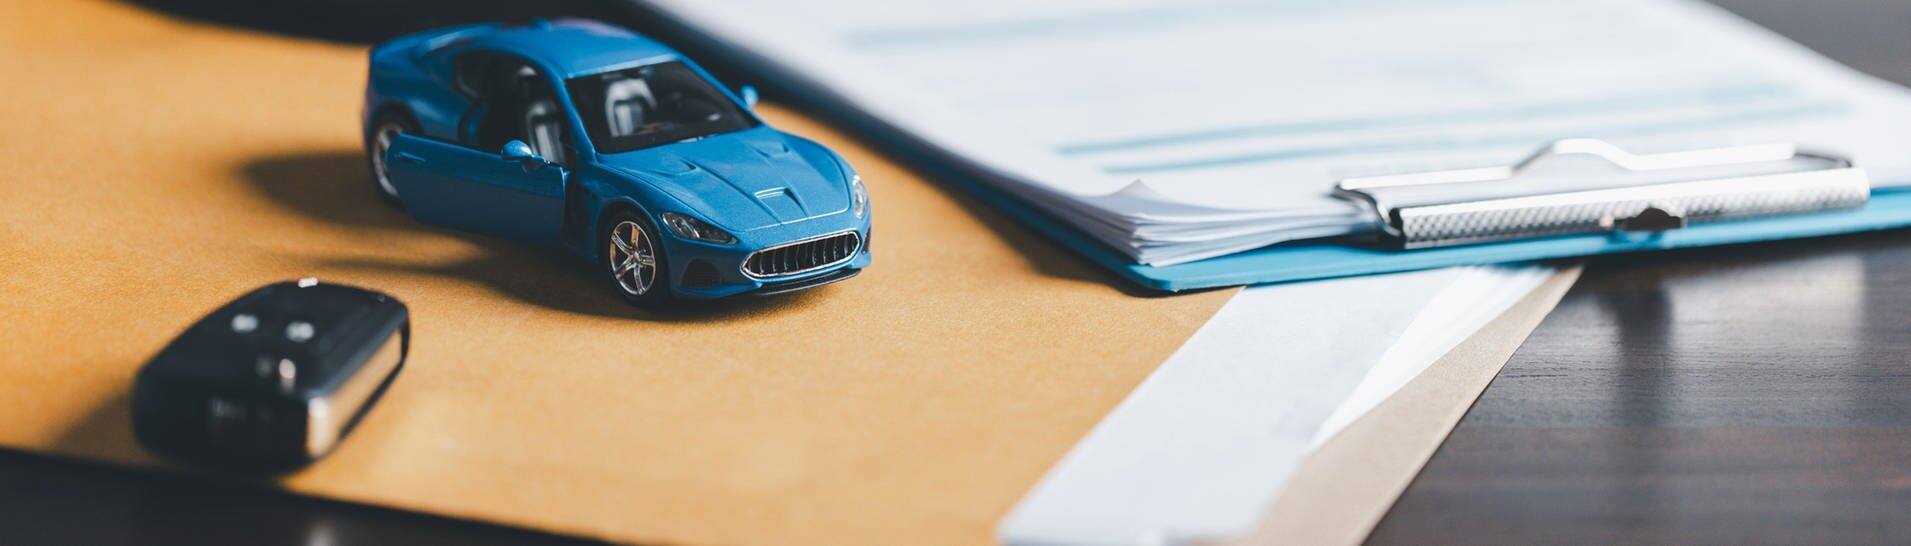 Blaues Miniaturauto liegt auf einem Tisch. Daneben ein richtiger Autoschlüssel, im Hintergrund eine hand mit einem Stift. (Foto: Adobe Stock, JD8)